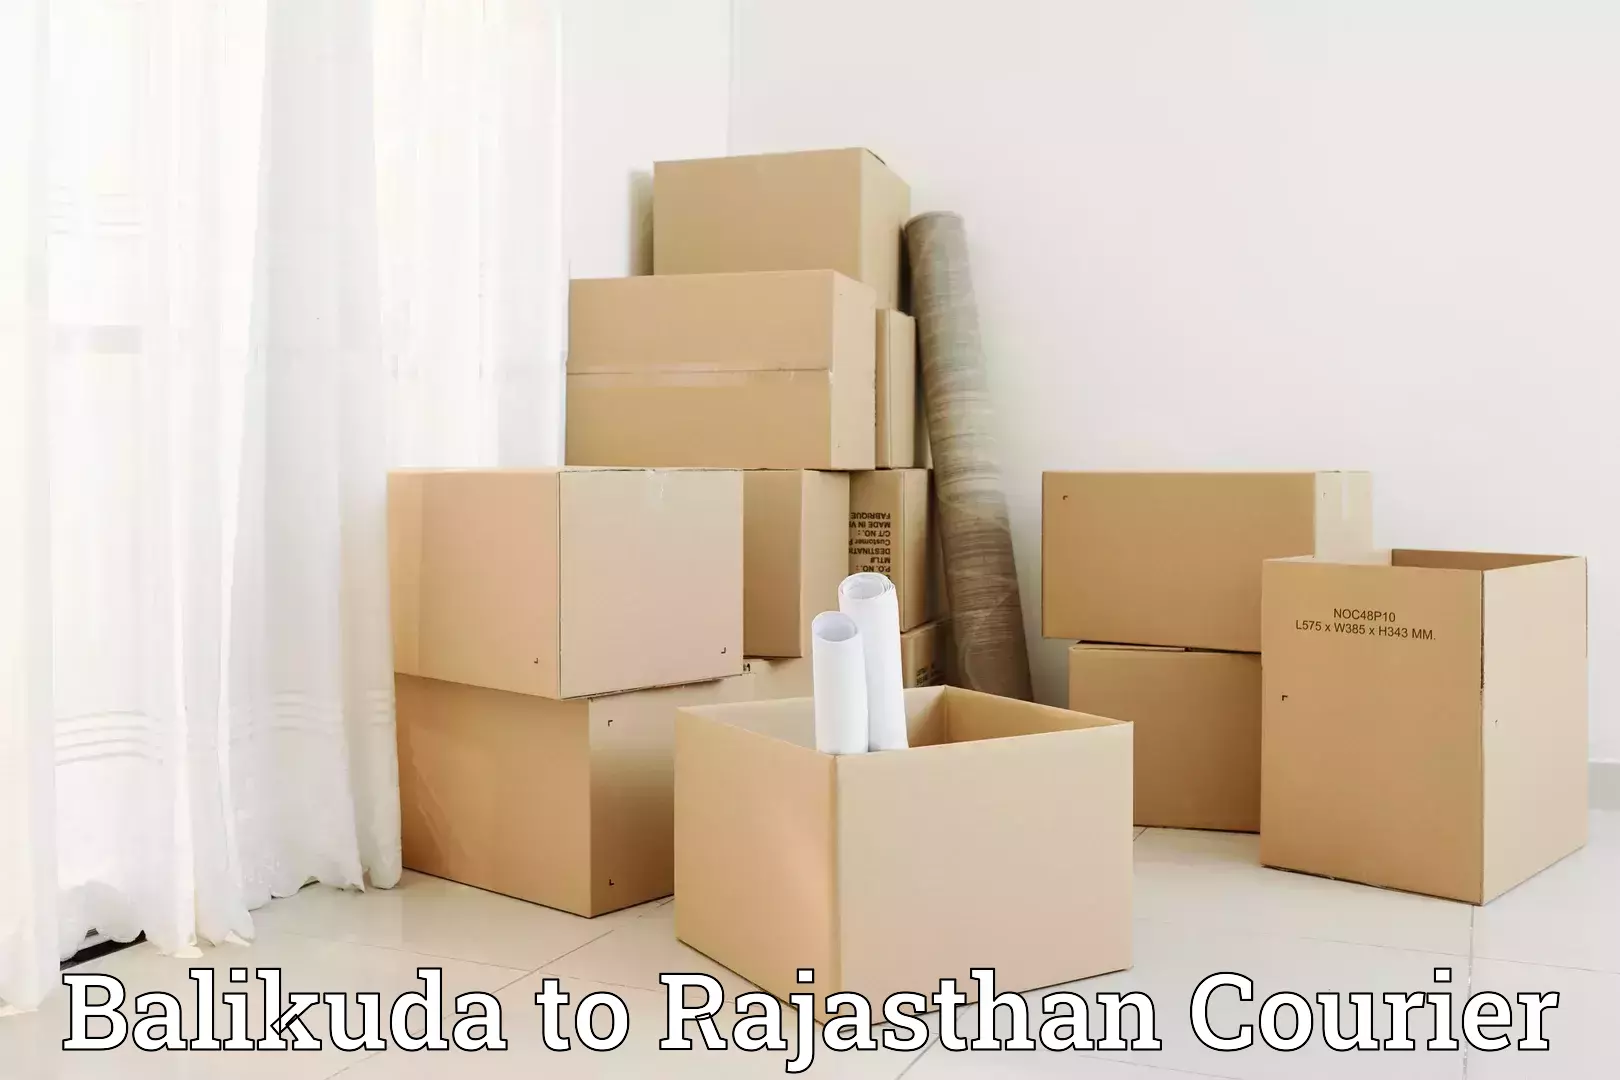 Skilled furniture transporters Balikuda to Nawalgarh